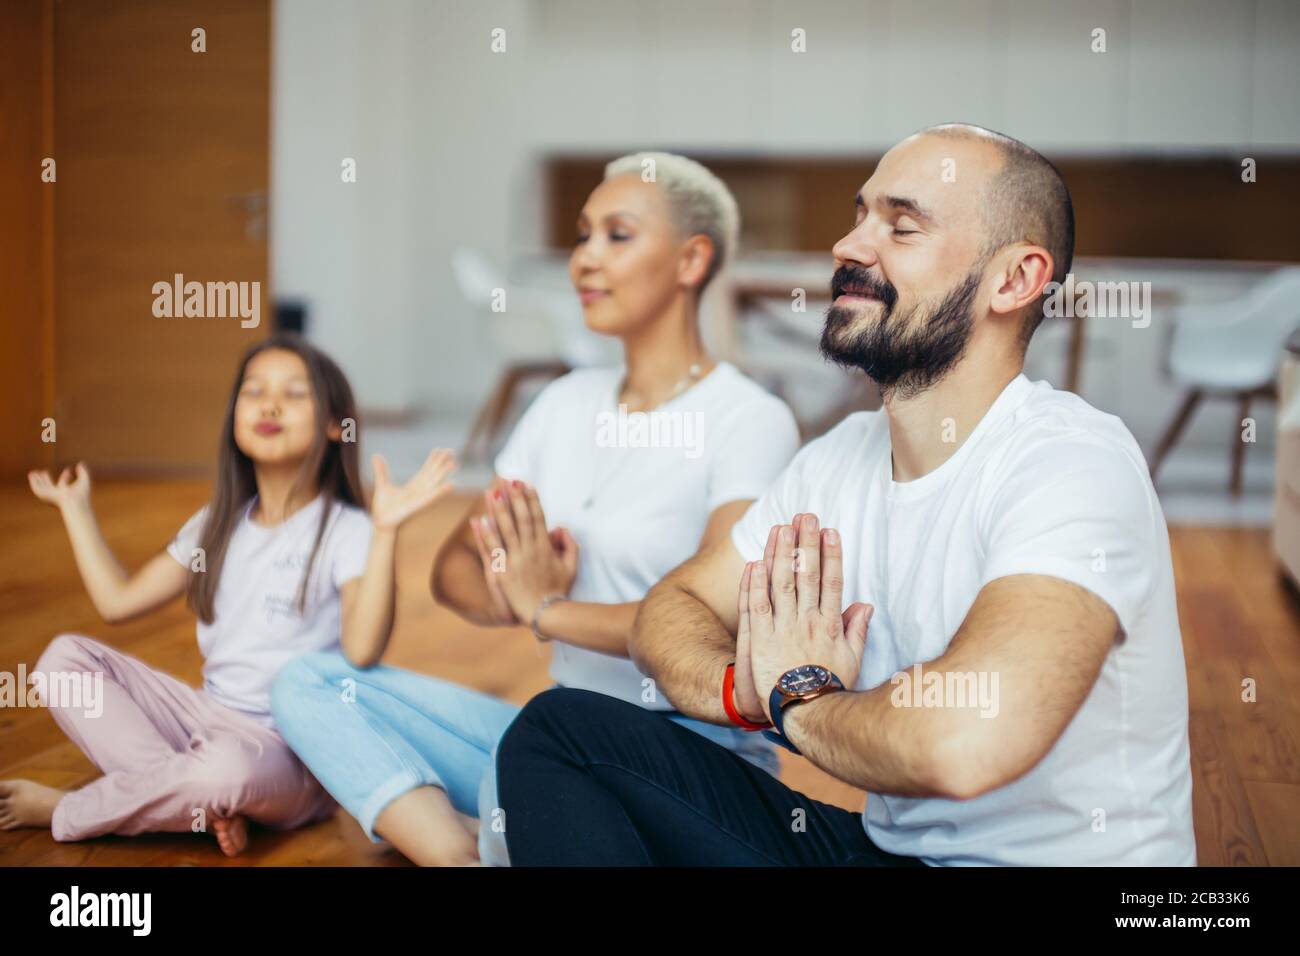 Padres jóvenes caucásicos con niño meditando en casa aislados en la habitación, sentados en el suelo. Familia, deporte, yoga concepto. Colores blancos Foto de stock